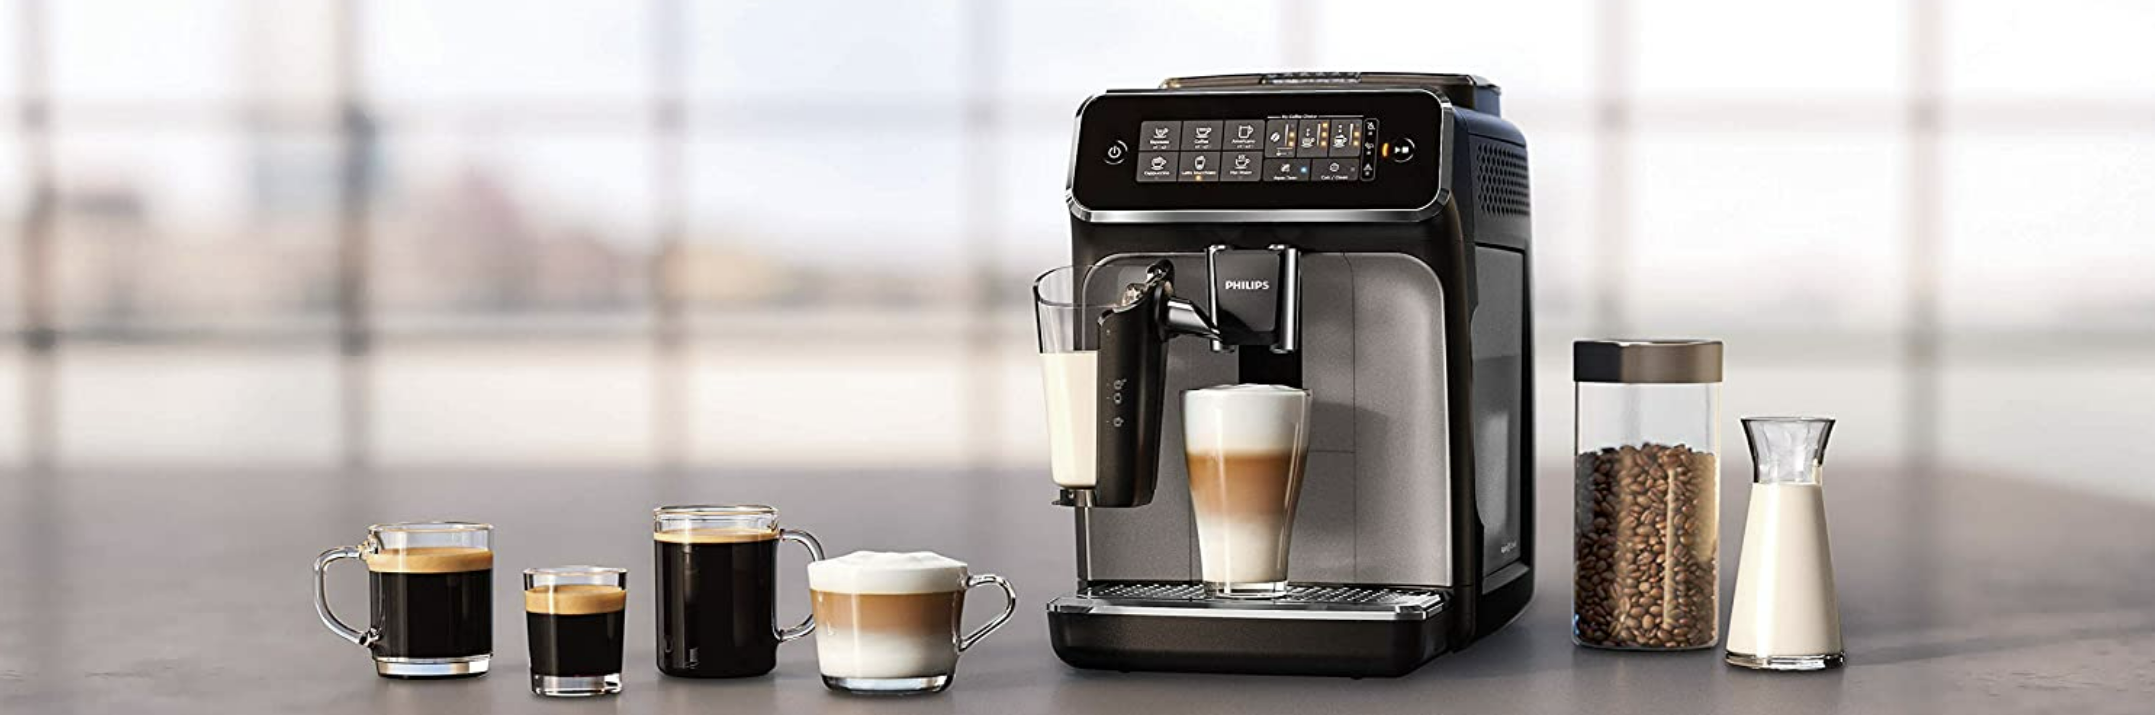 Essential, Machine à café à grain, 3 boissons Ecran LCD, mousseur, café  Starbucks, Machines à café à grains